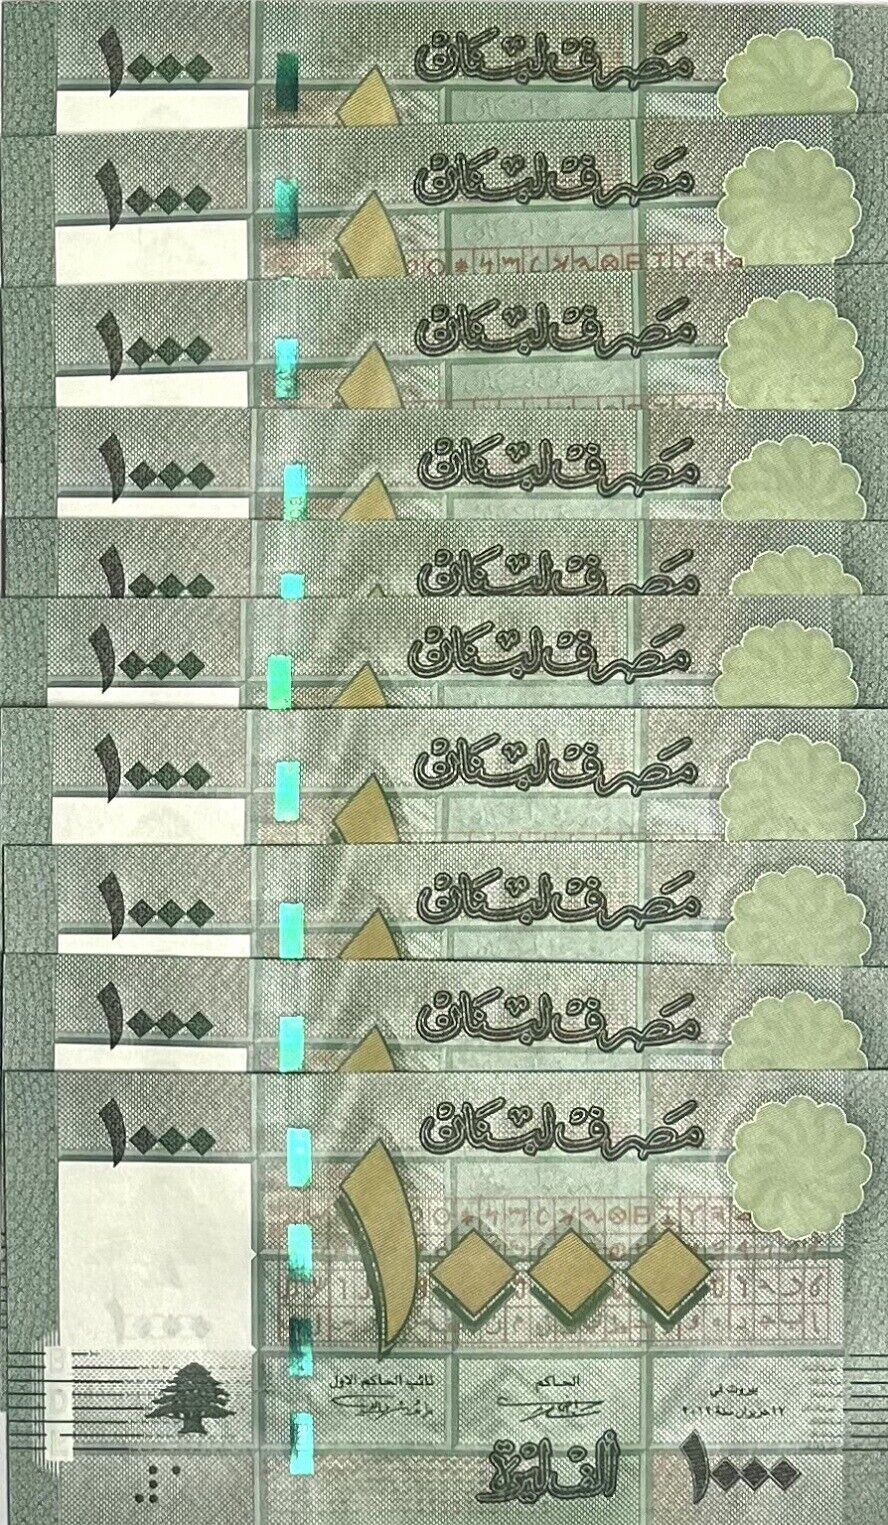 Lebanon 1000 Livres 2012 P 90 b UNC LOT 10 PCS